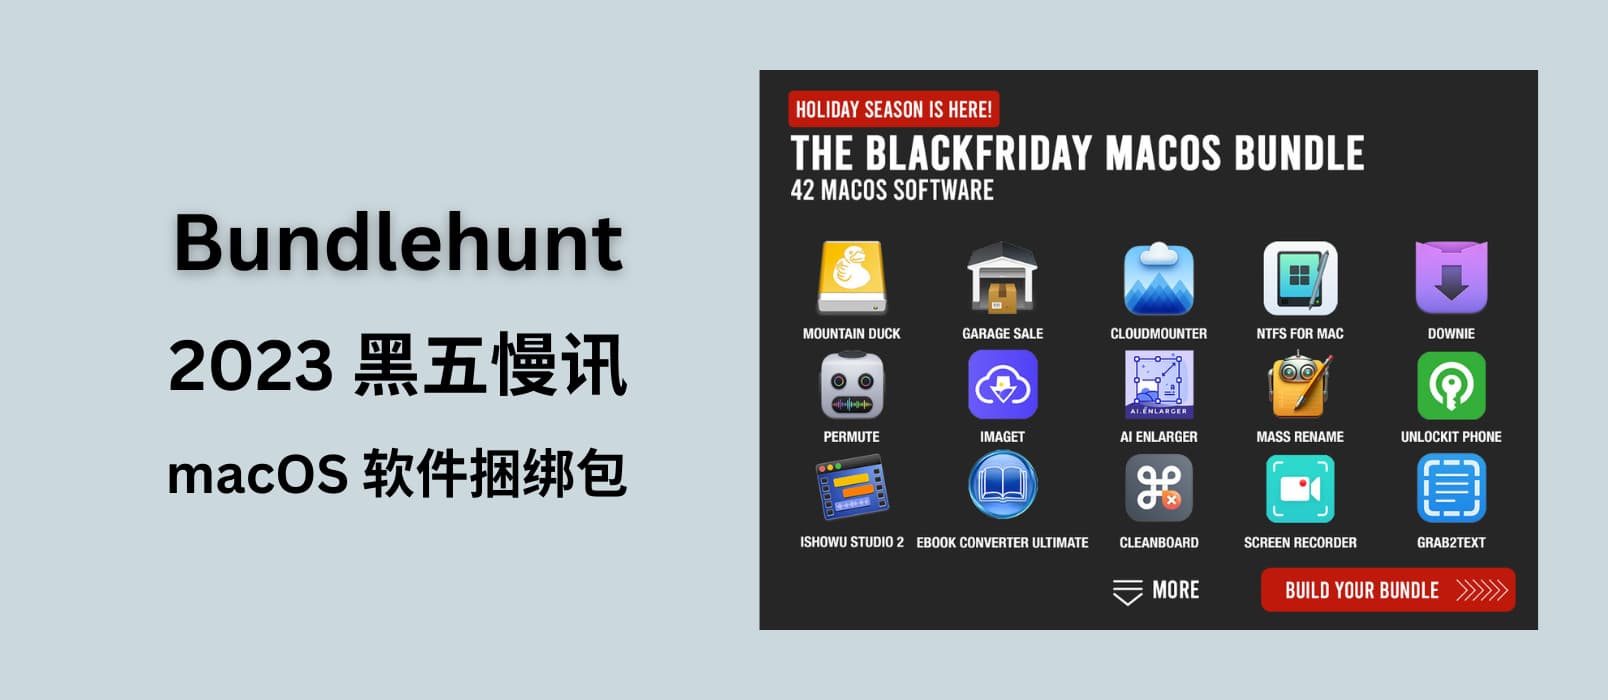 Bundlehunt 2023年 macOS 软件黑五捆绑包【慢讯】 1